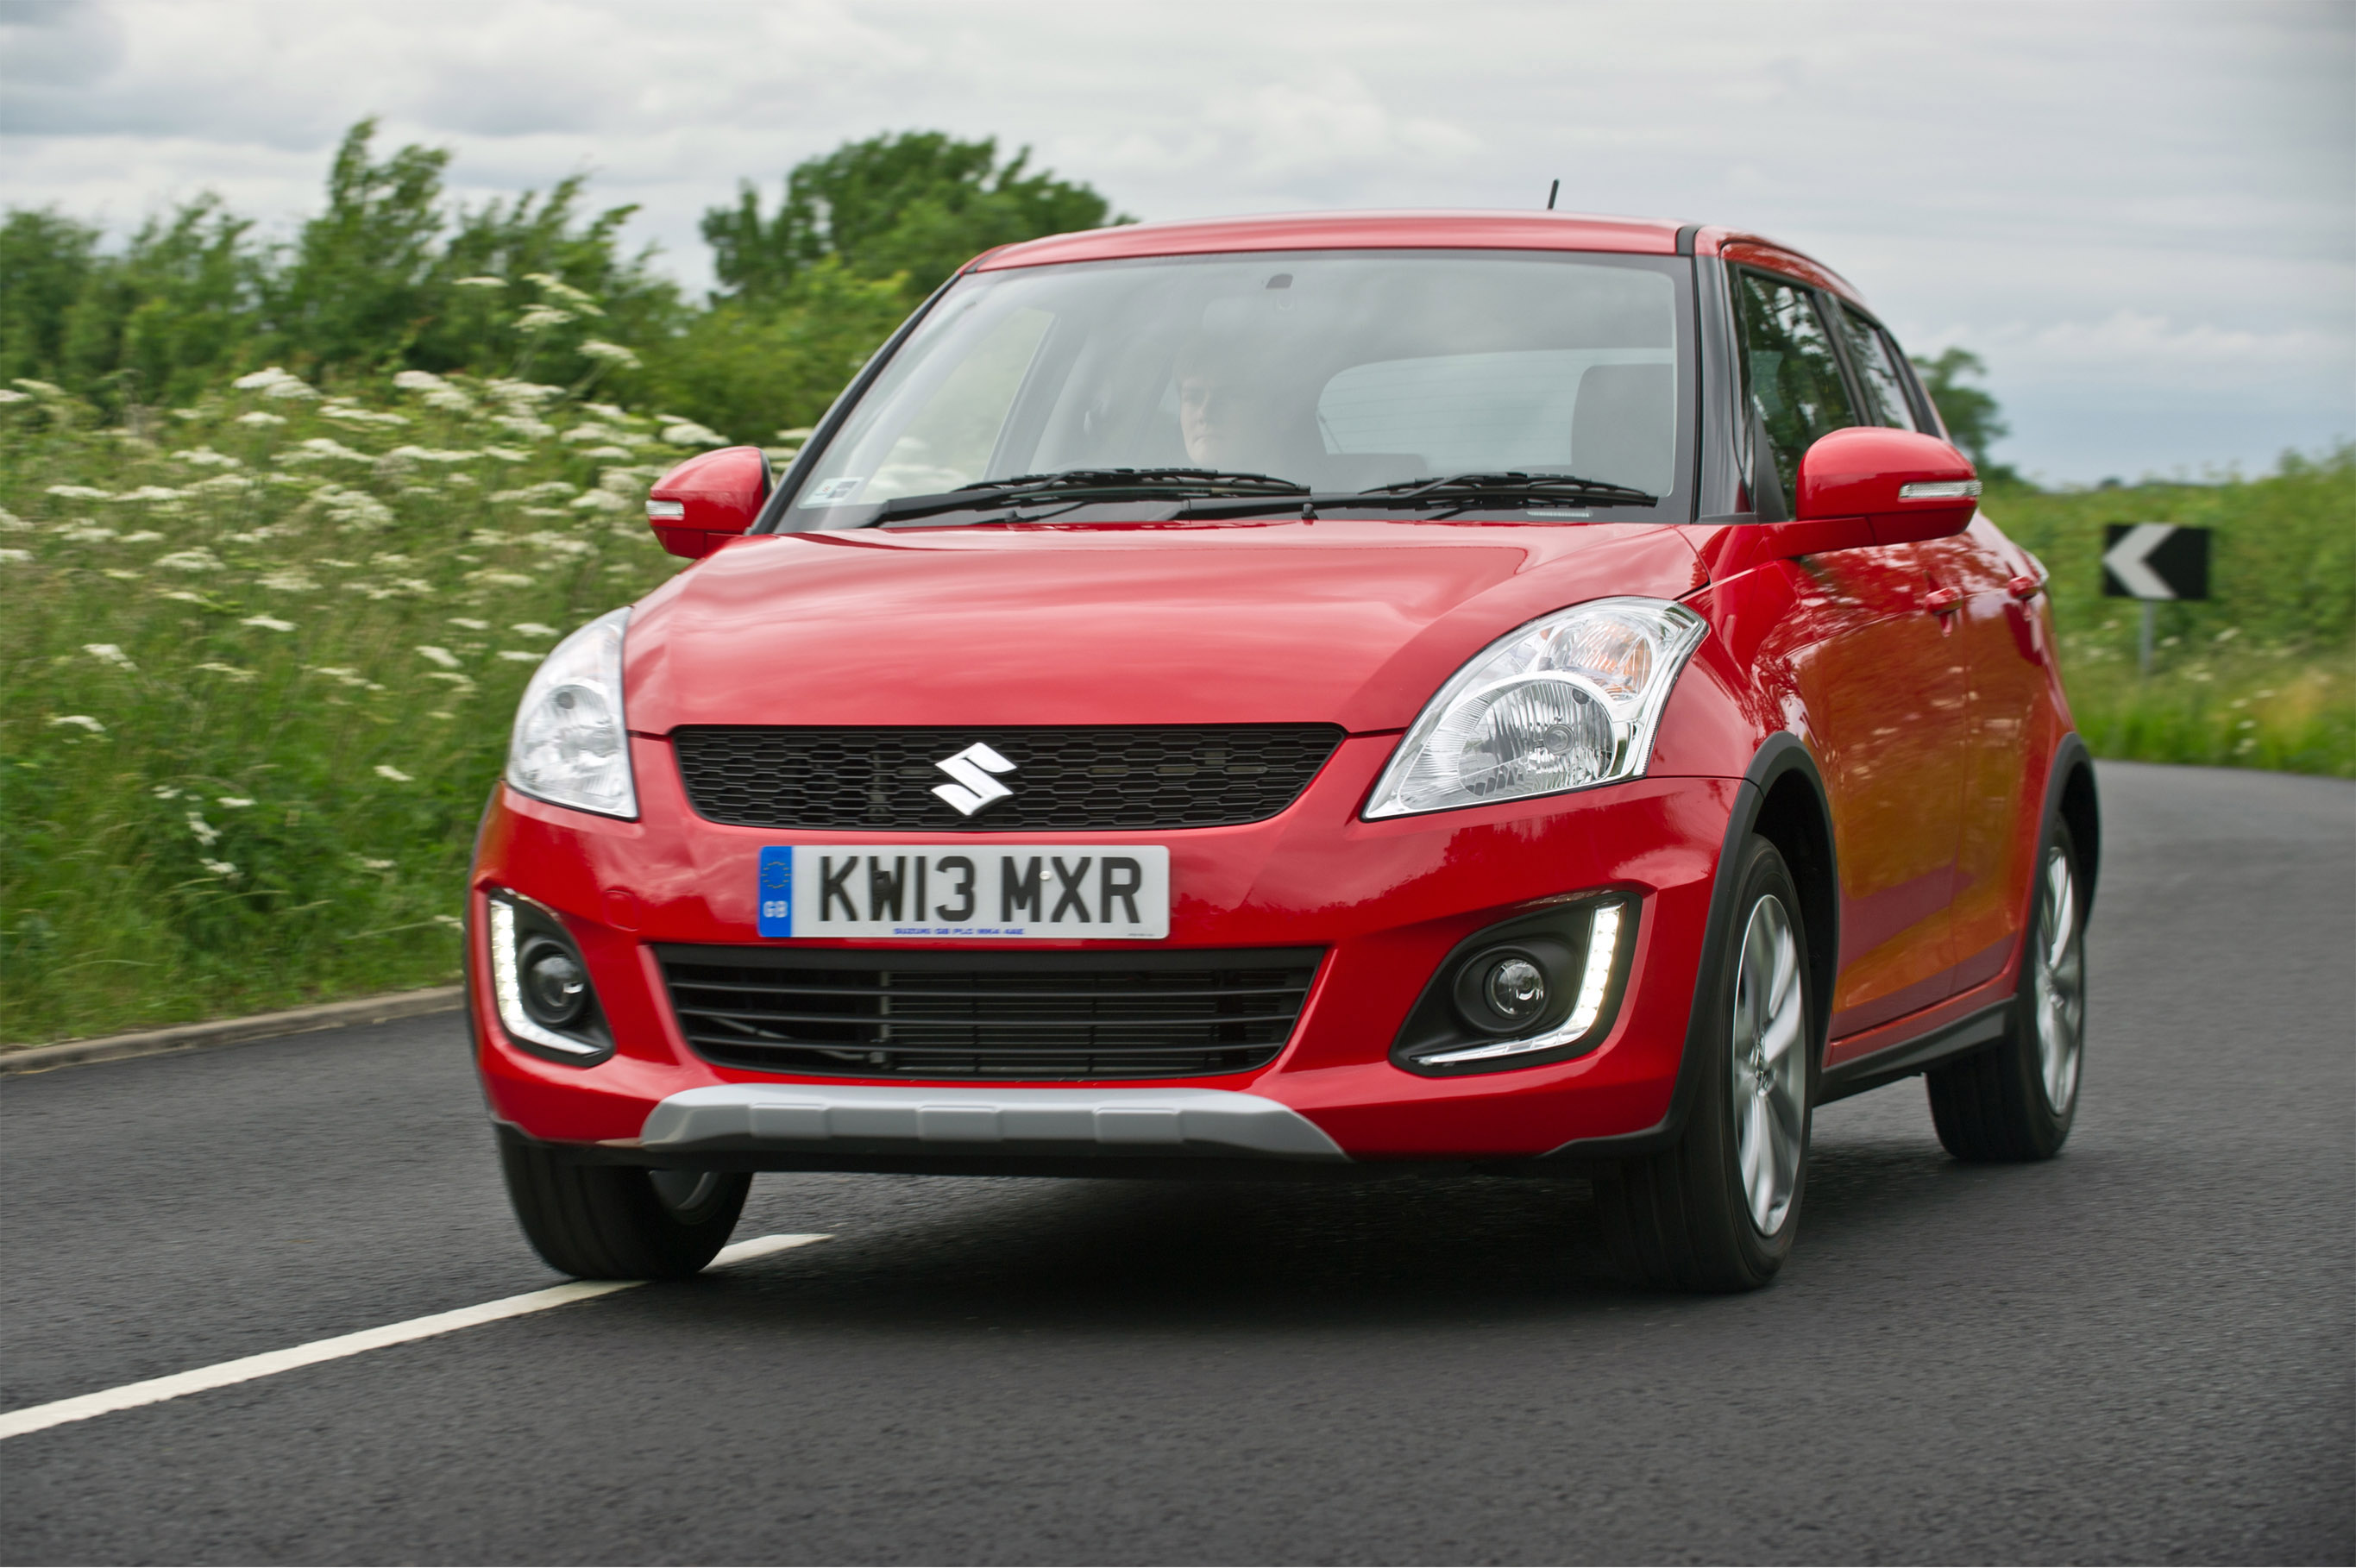 Đánh giá chi tiết Suzuki Swift 2012